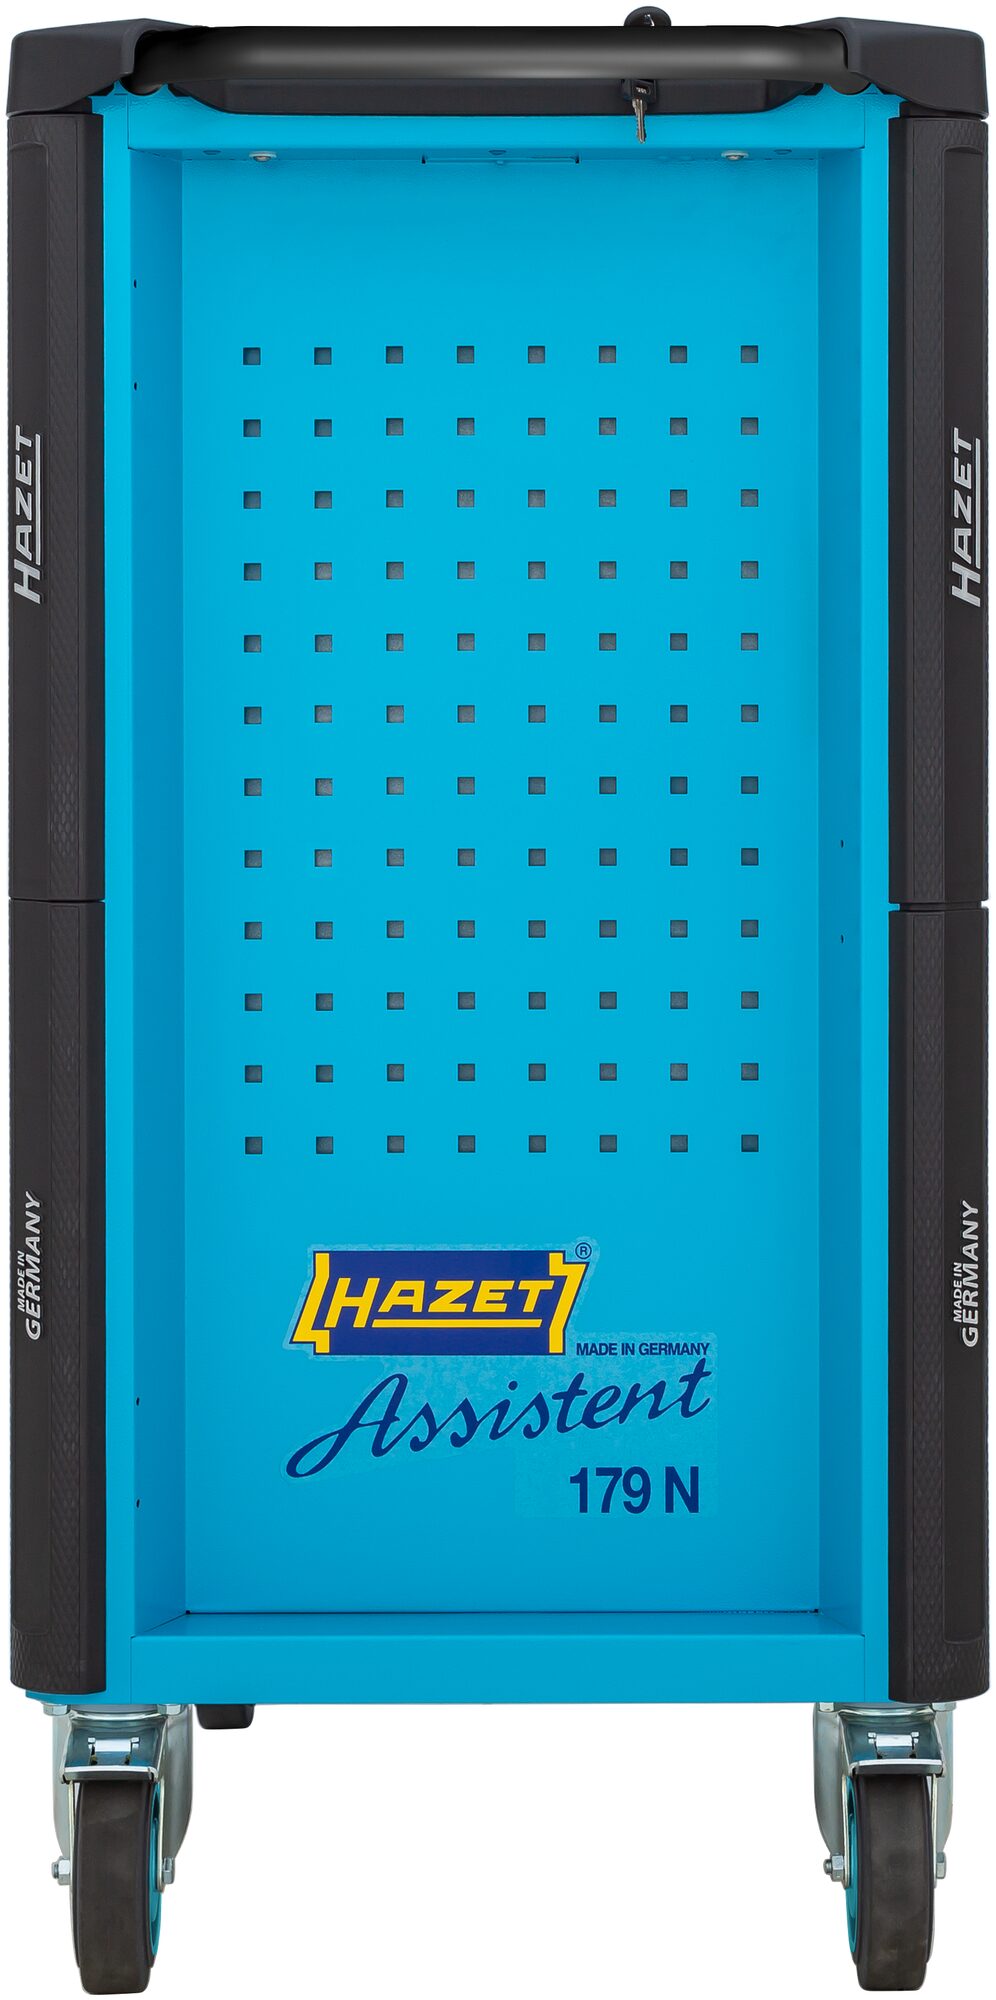 HAZET Werkstattwagen Assistent 179N-7/137 · Werkzeuge: 137